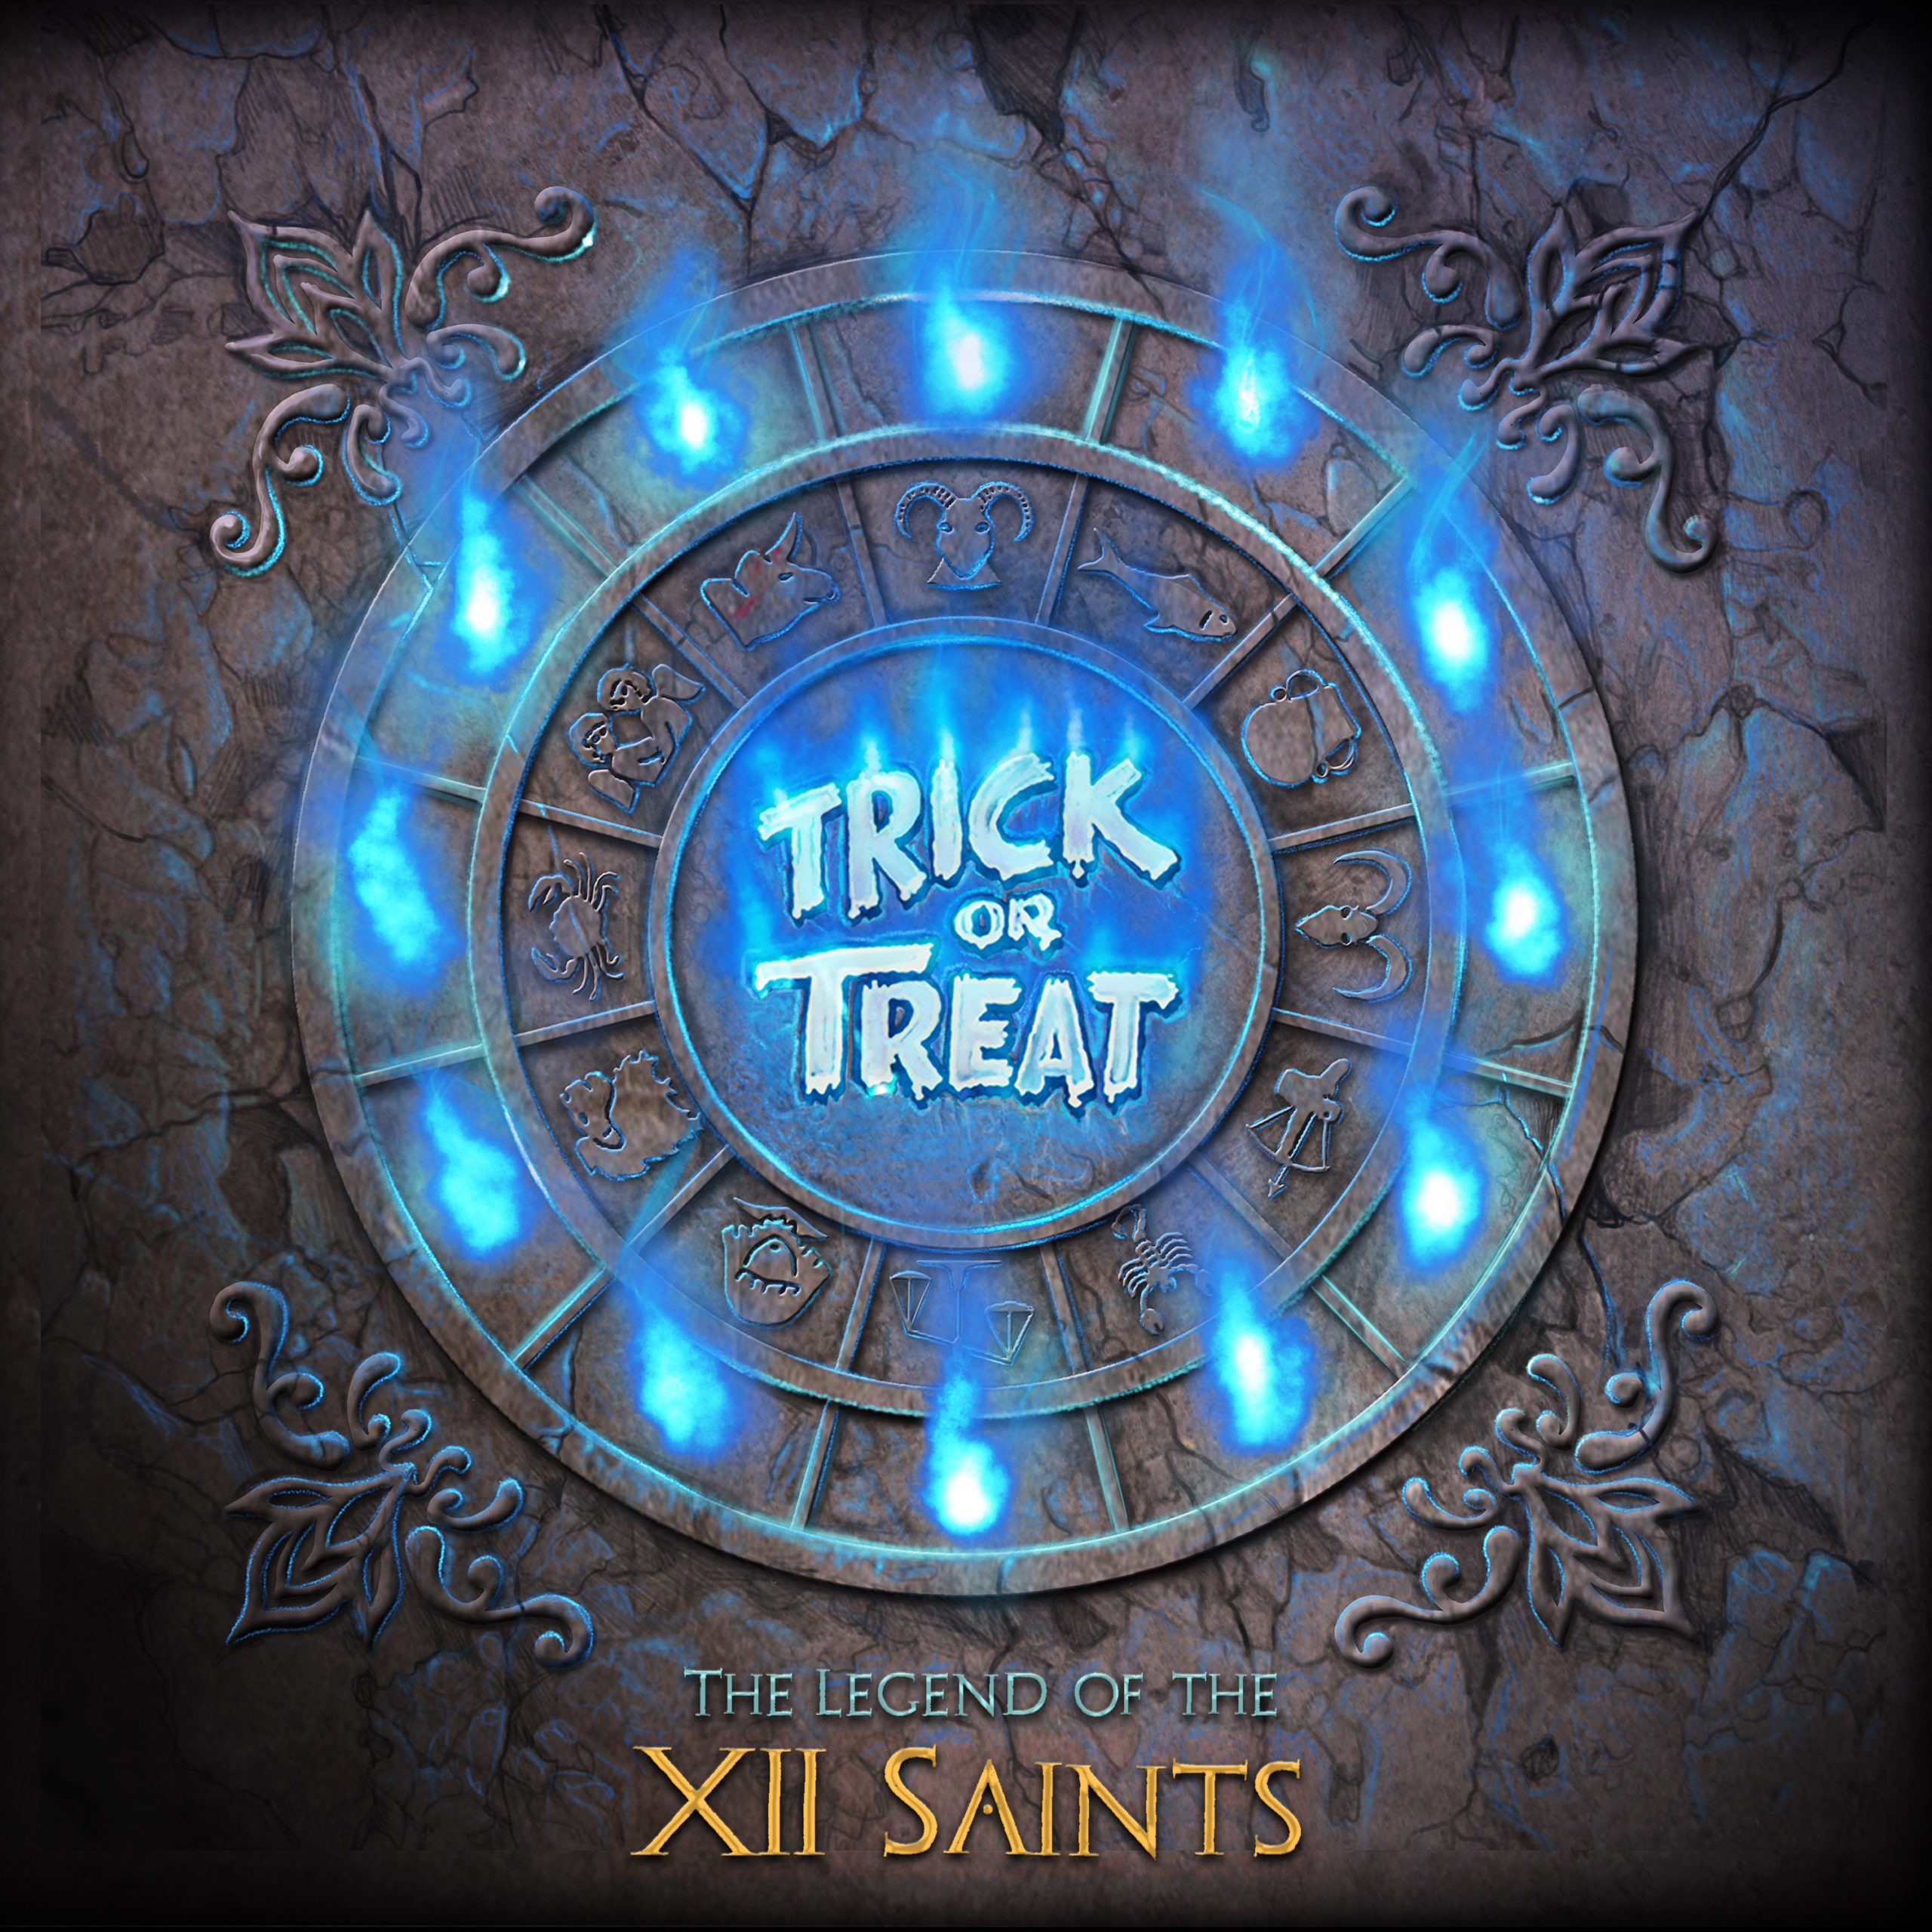 Trick or Treat - The Legend of the XII Saints pour la Zodiak de Omnipollo